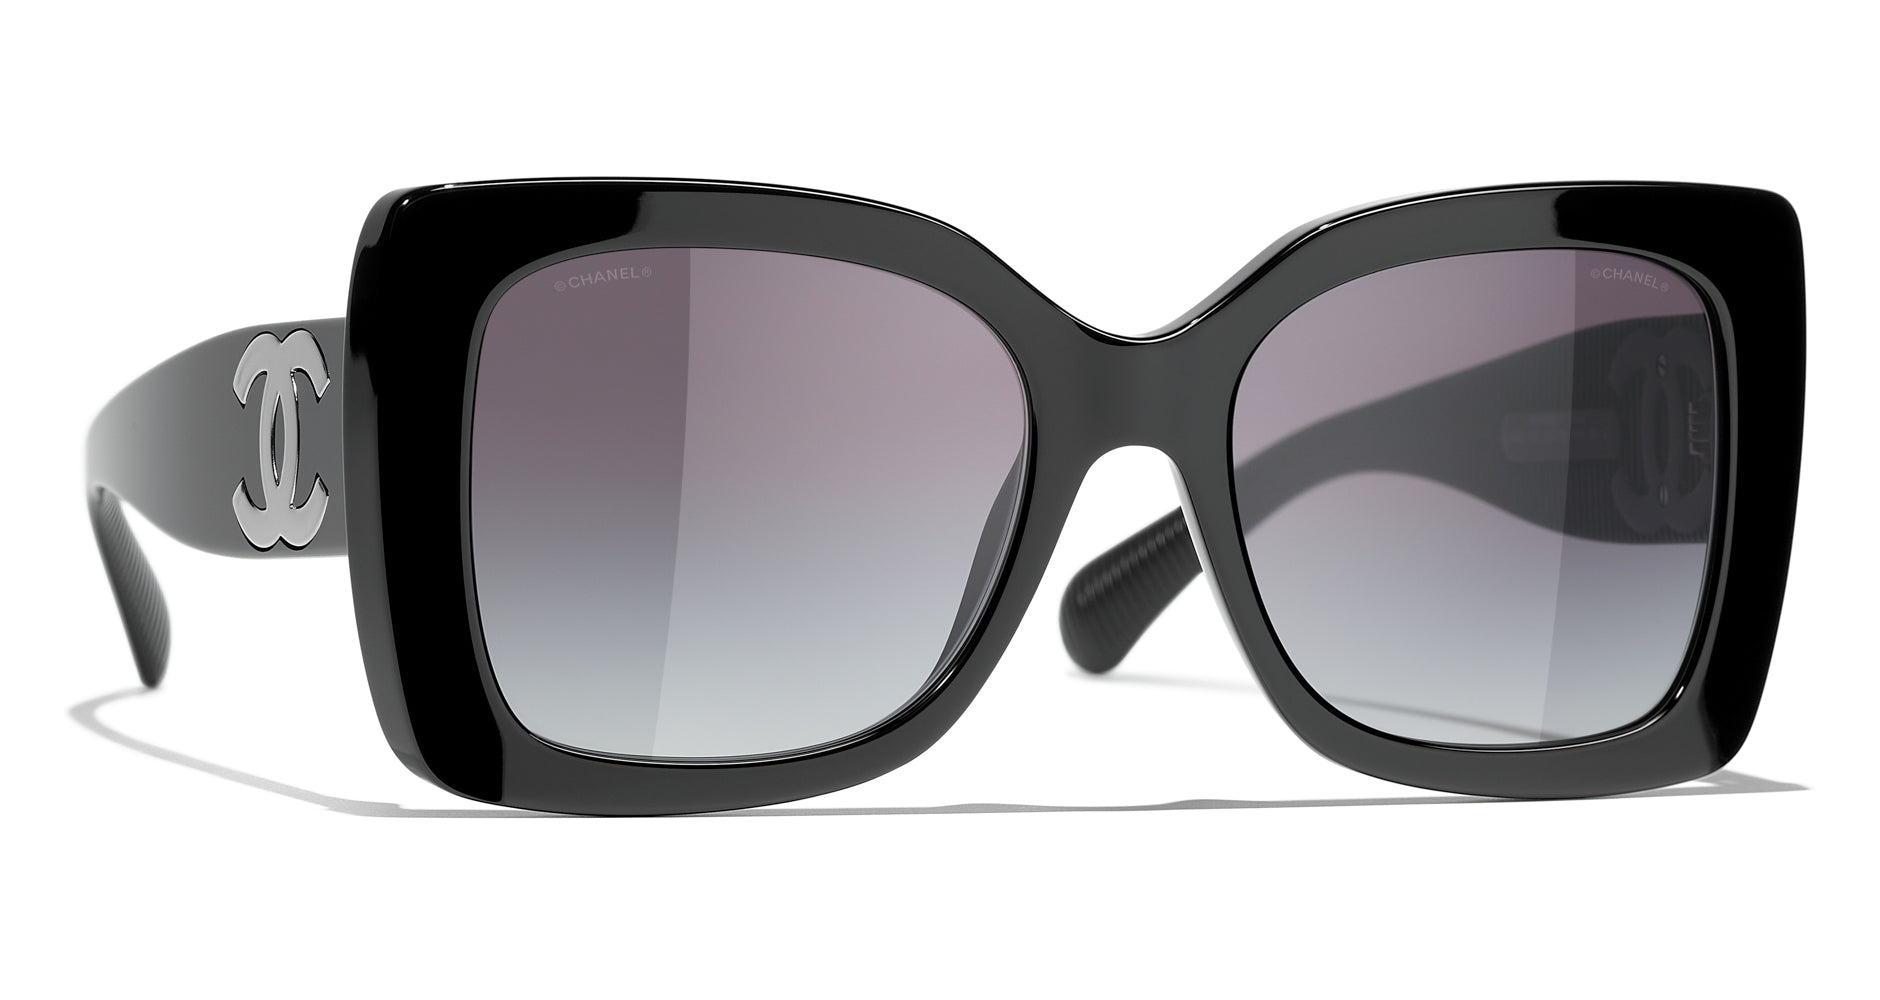 Chanel 5494 Square Sunglasses